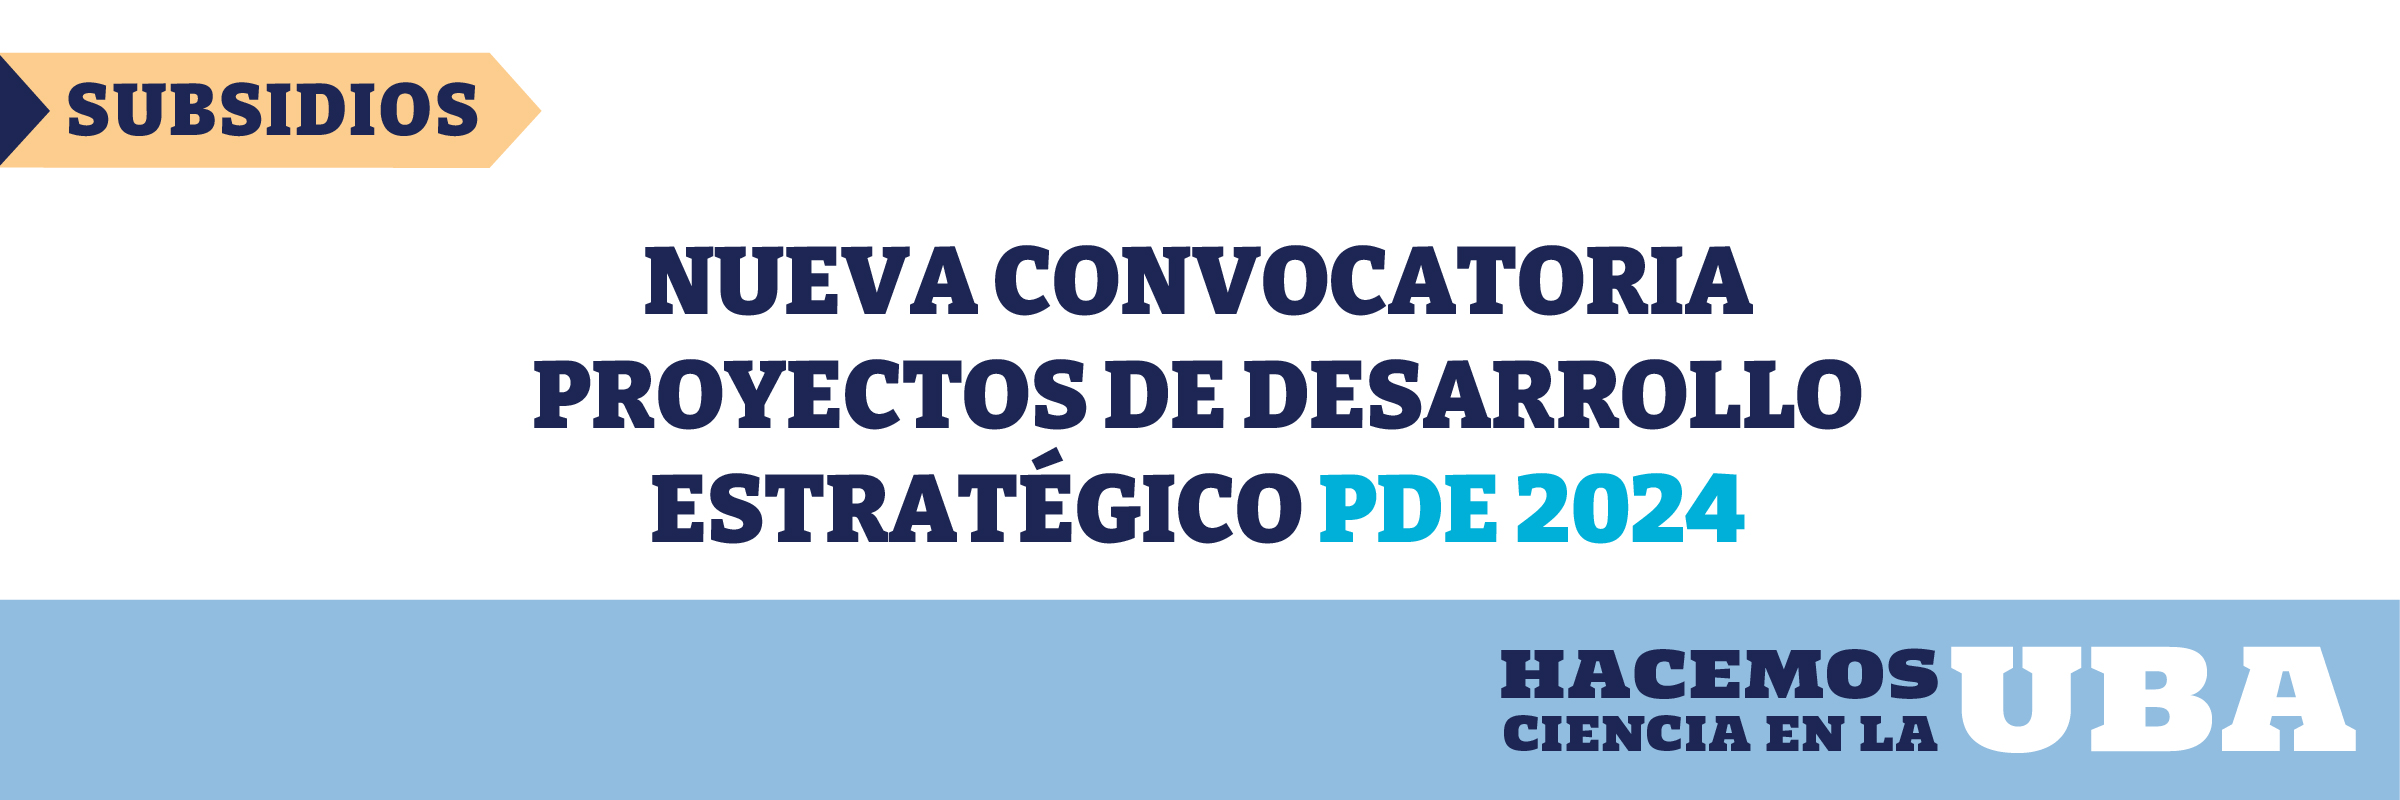 Nueva Convocatoria Proyectos de Desarrollo Estratégico 2024 (PDE)